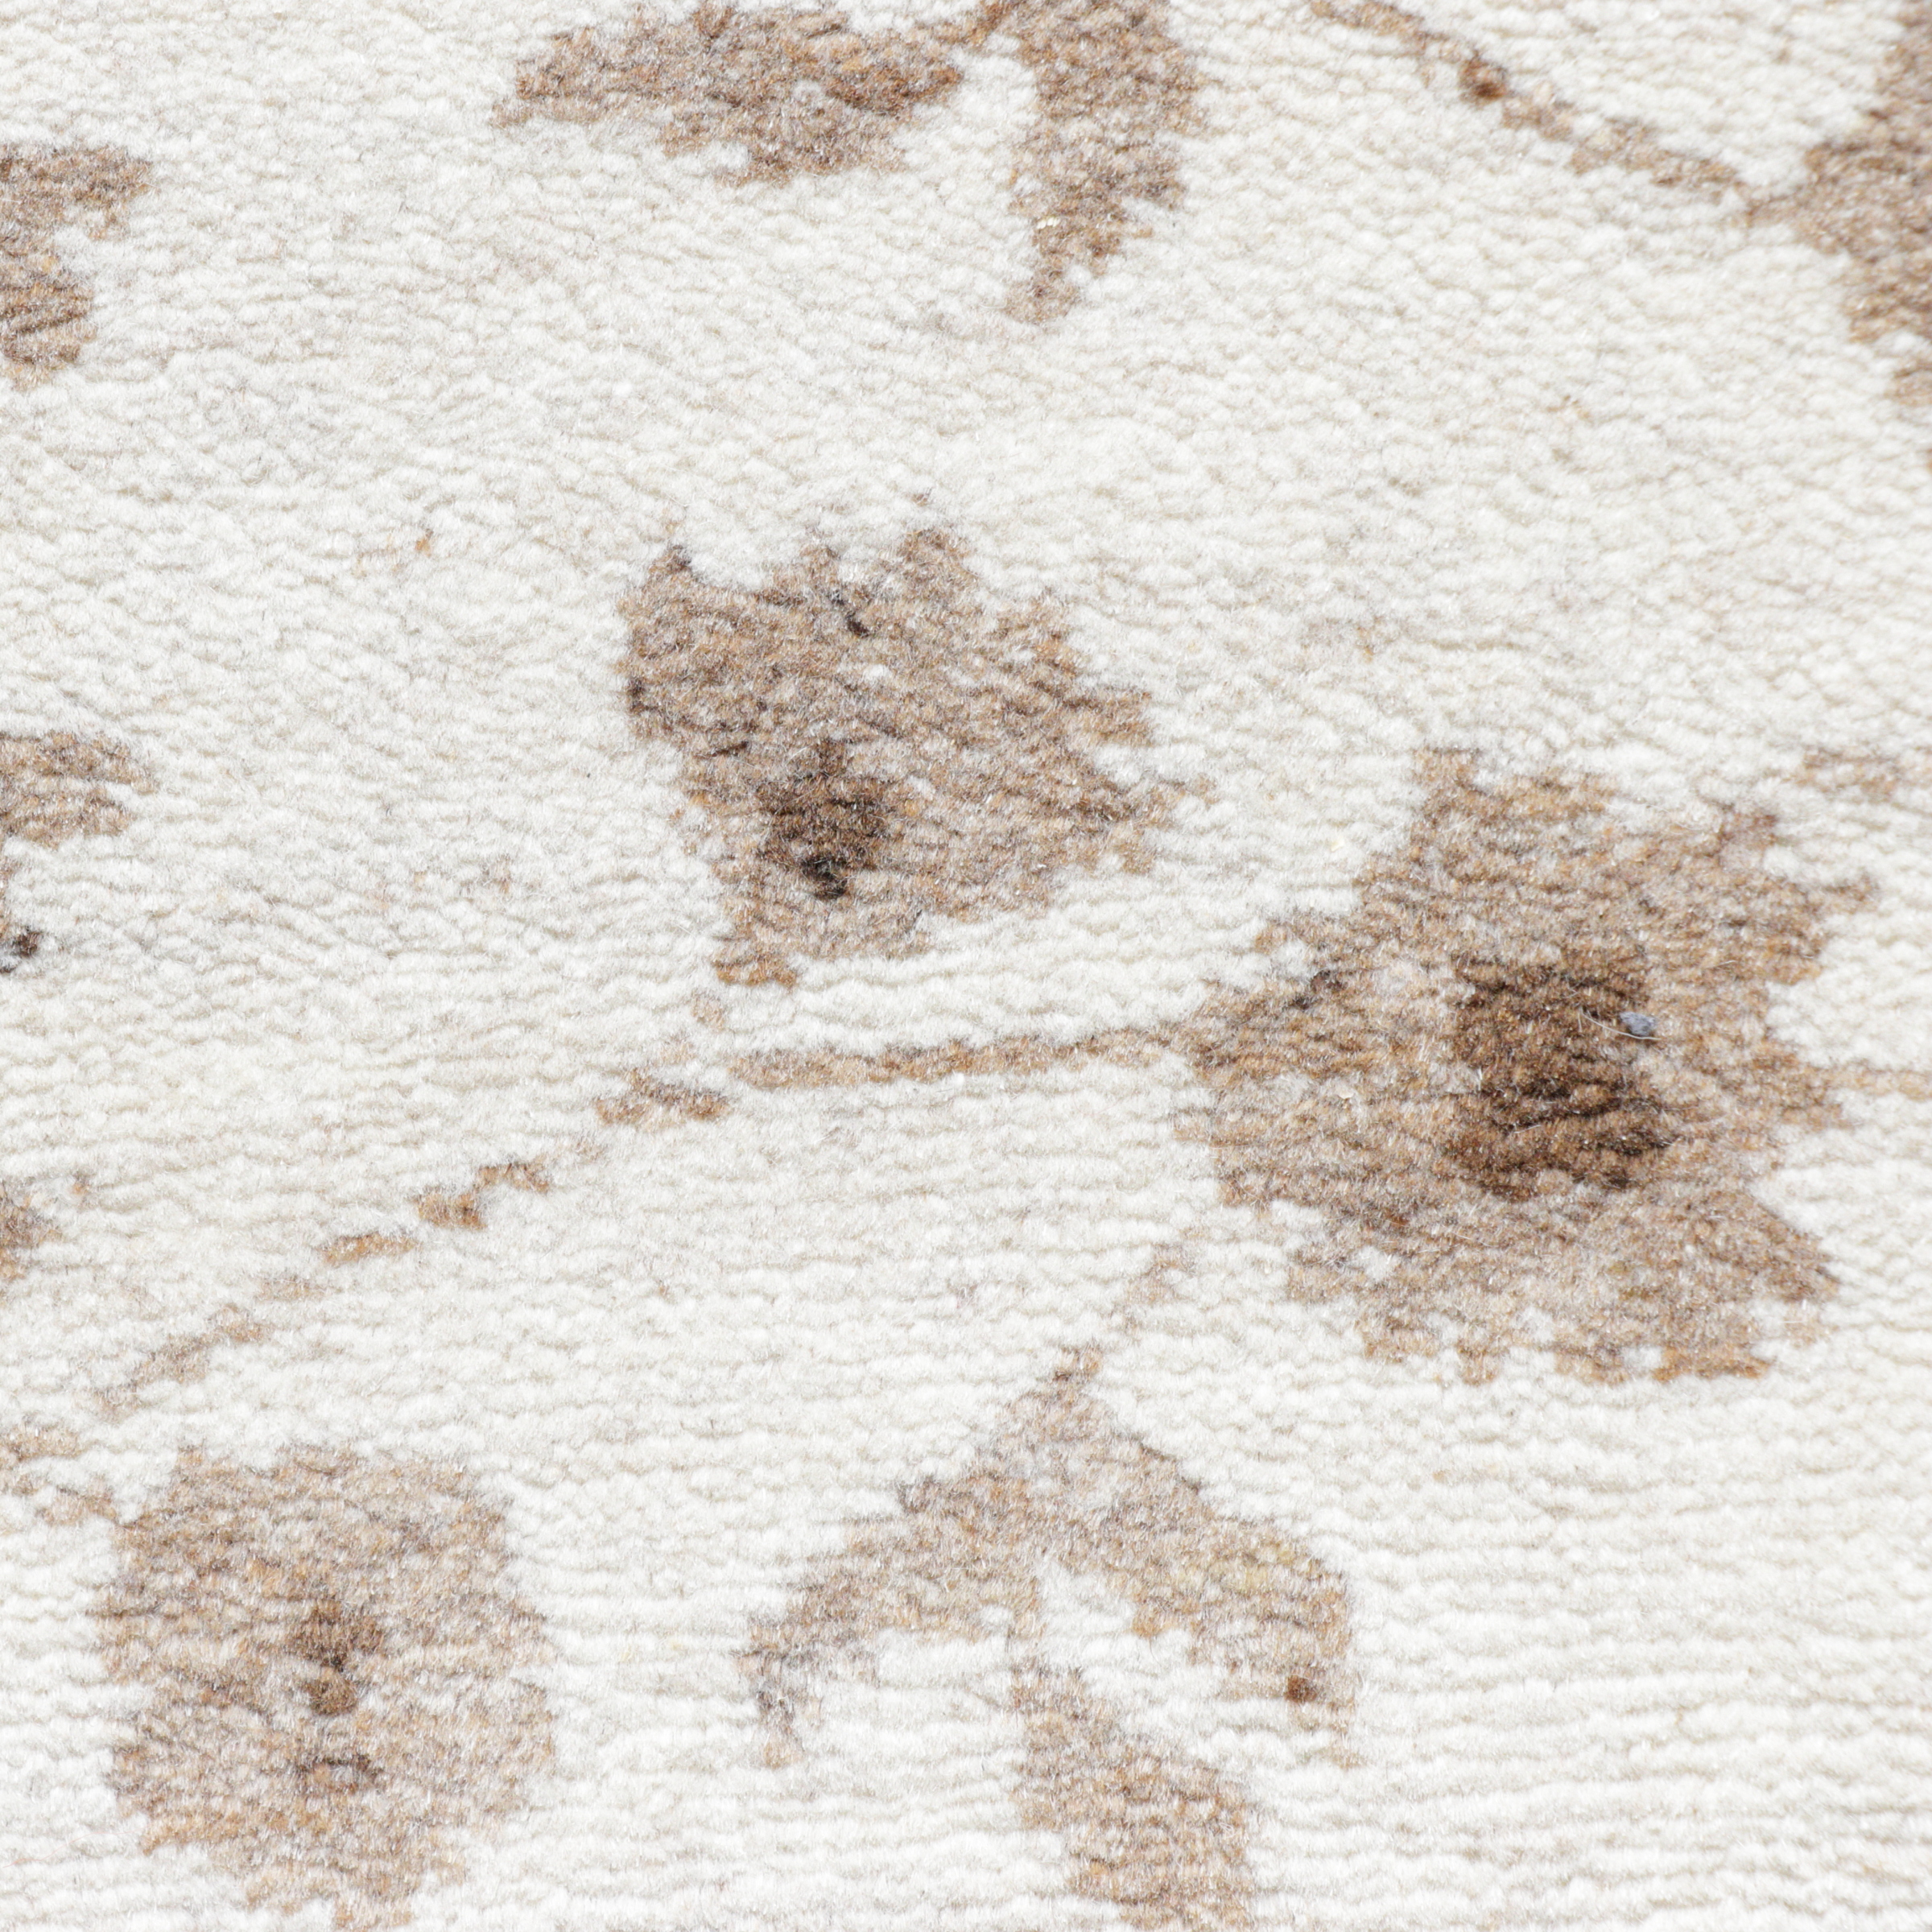 Natur-Pur Teppich beige/sand, handgeknüpft aus sardischer Wolle mit floralem Mittelfeld, Detailansicht